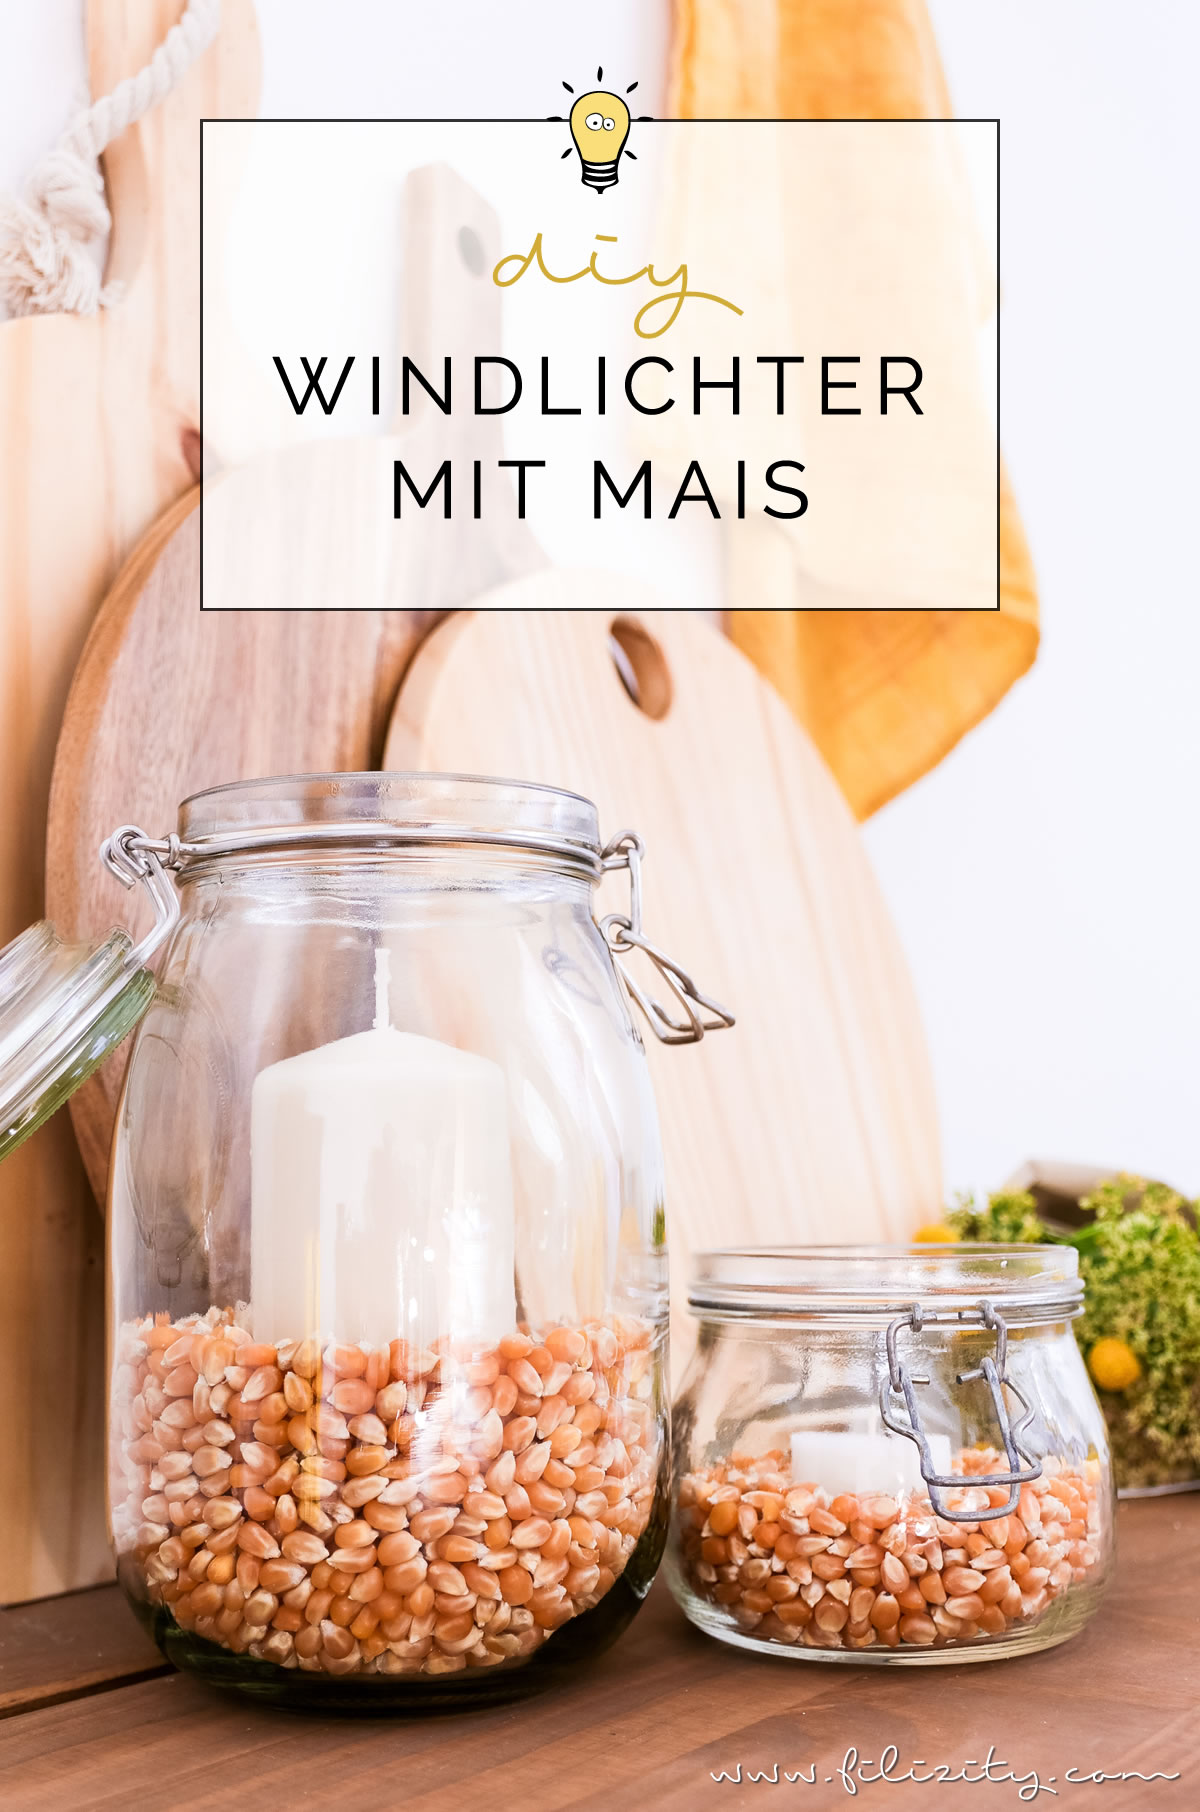 DIY Windlichter mit Maiskörnern - So kannst du natürliche Herbstdeko selber machen | Basteln mit Kindern | Filizity.com | DIY-Blog aus dem Rheinland #herbst #deko #natur